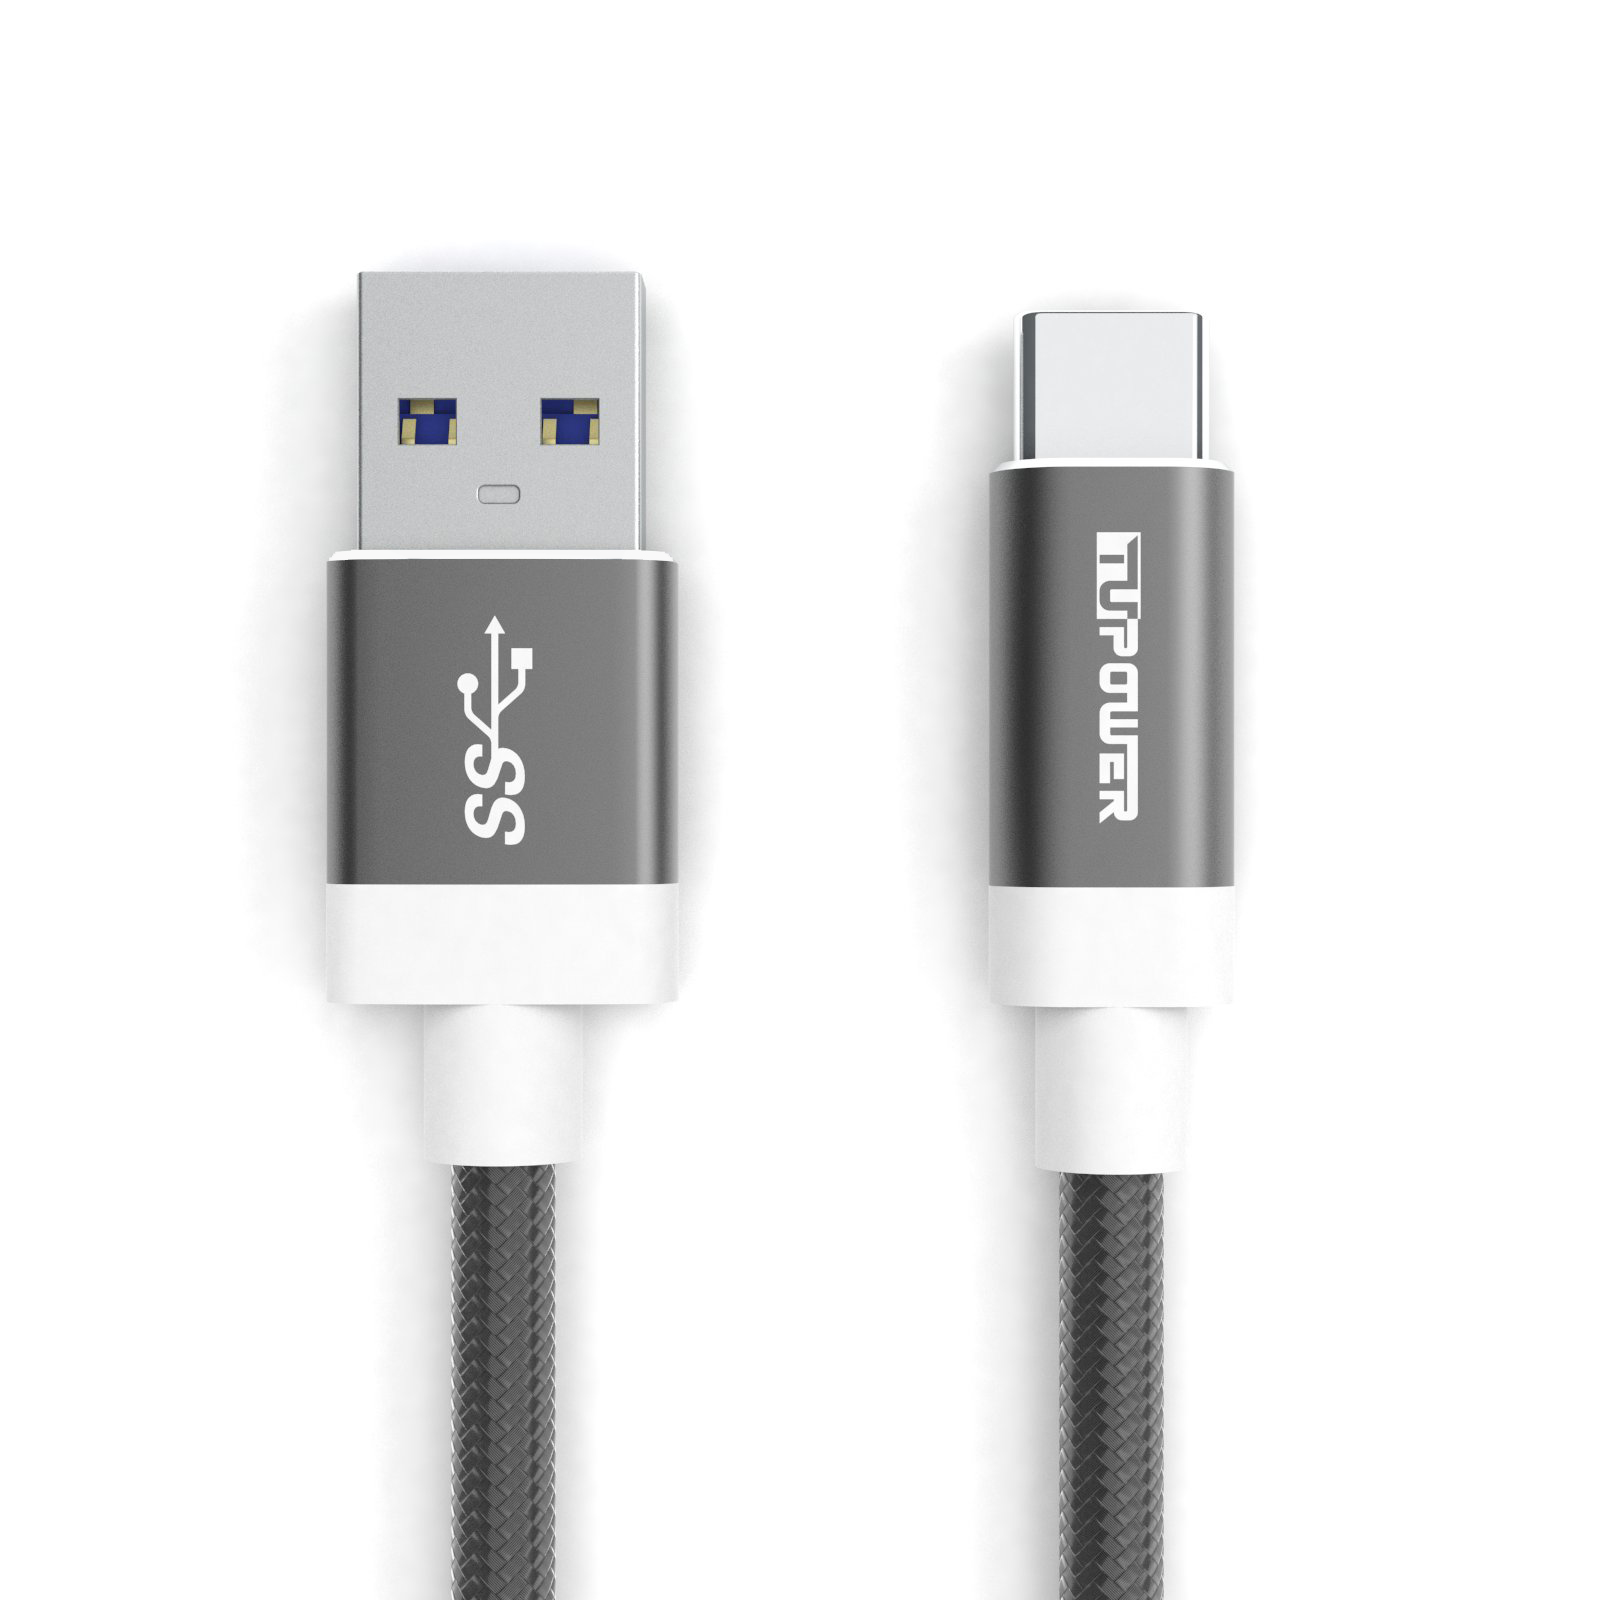 TUPOWER K02 USB C USB Kabel Samsung auf USB für Ladekabel C QuickCharge Datenkabel 1m 3.0 A Handy Kabel